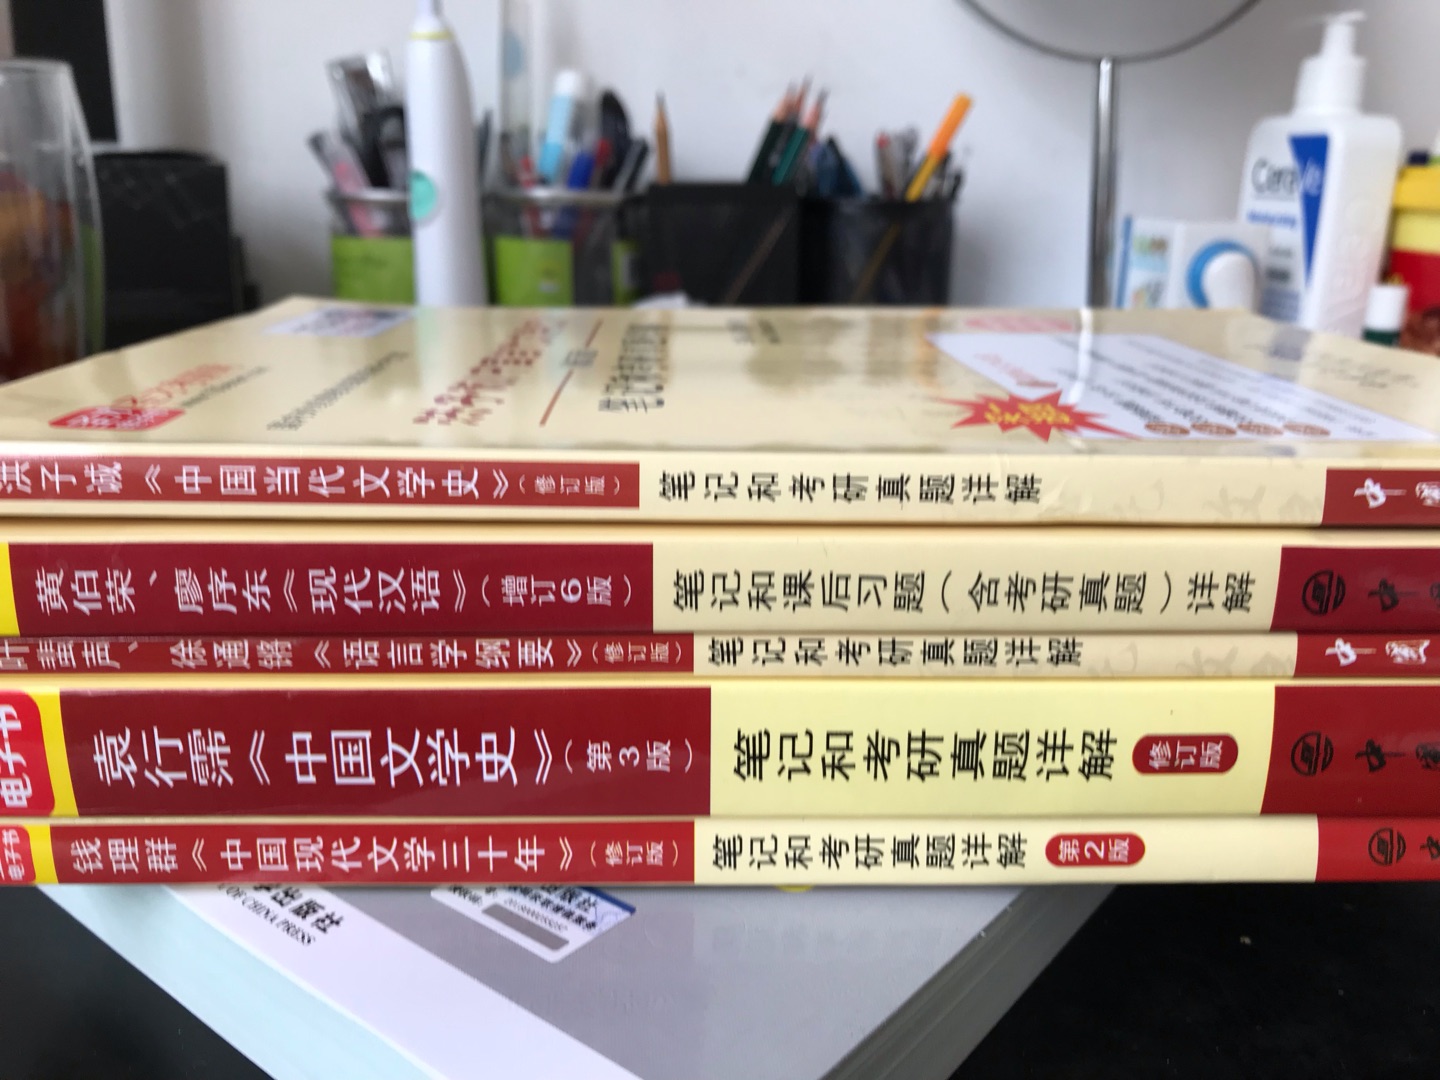 洪子诚所著的《中国当代文学史》（修订版，北京大学出版社）被列为国家“十一五”重点图书，是我国高校采用较多的当代文学优秀教材，也被众多高校指定为“当代文学”专业考研参考书目。